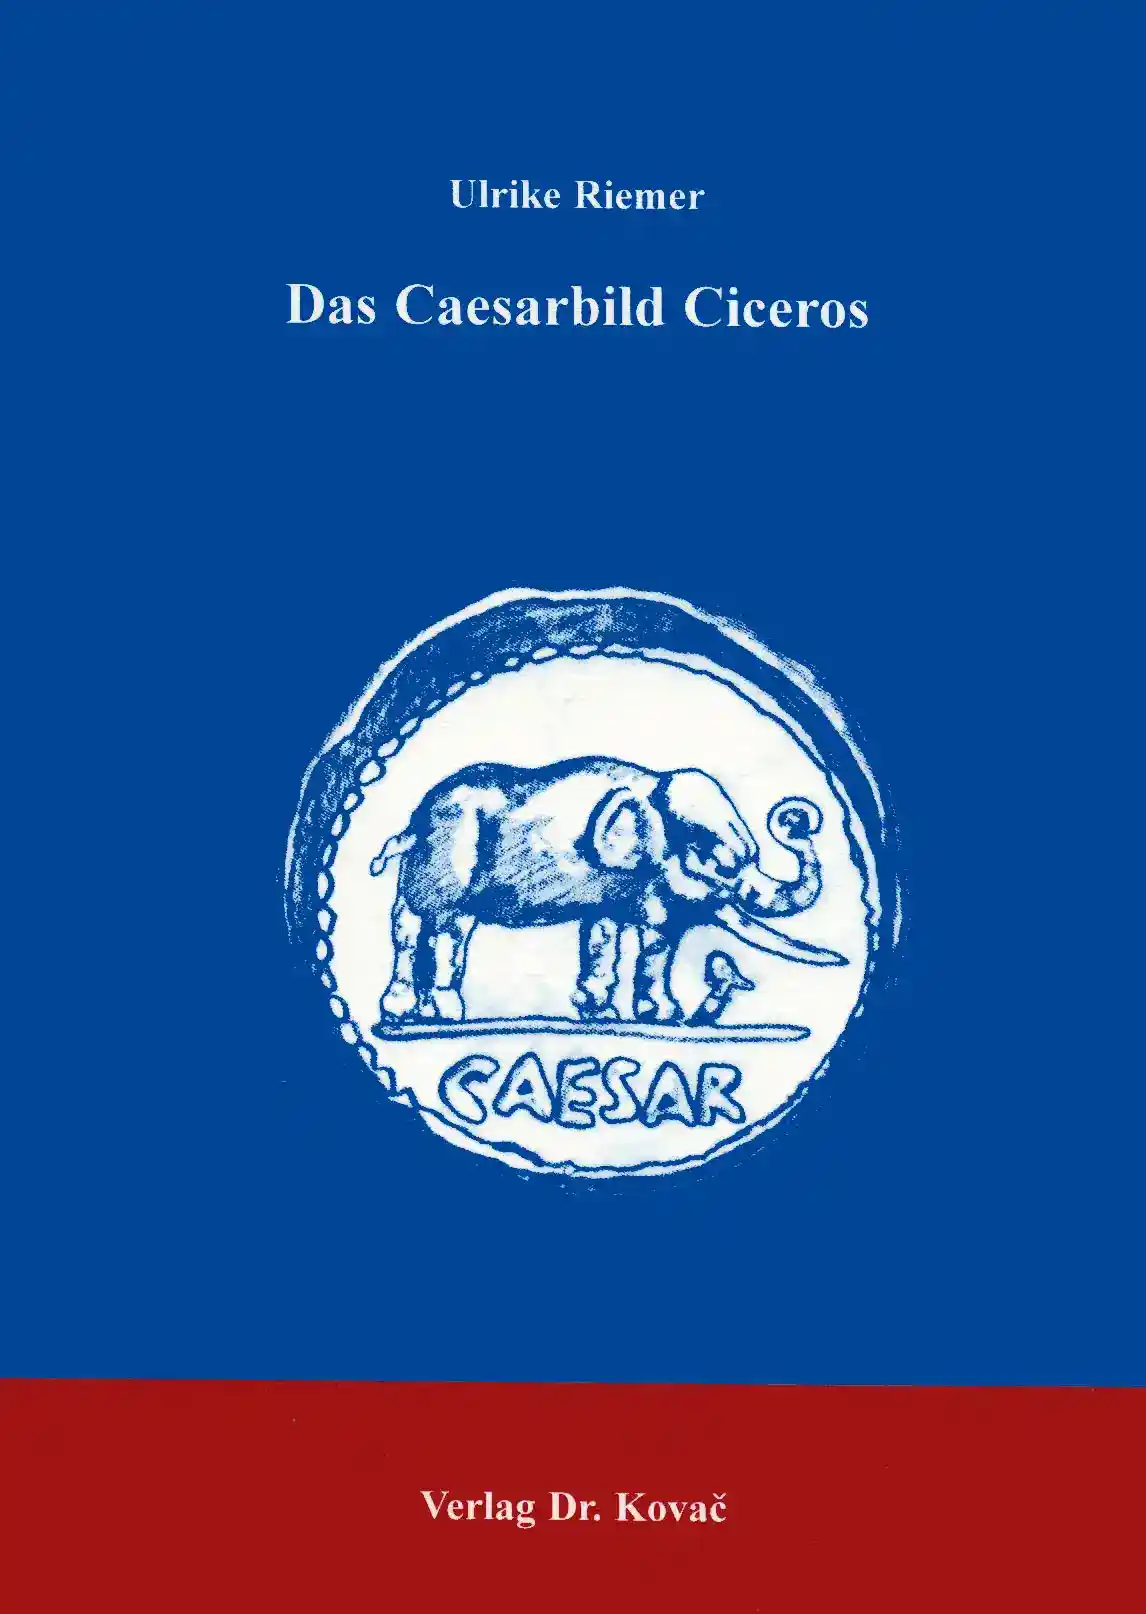 Das Caesarbild Ciceros (Forschungsarbeit)